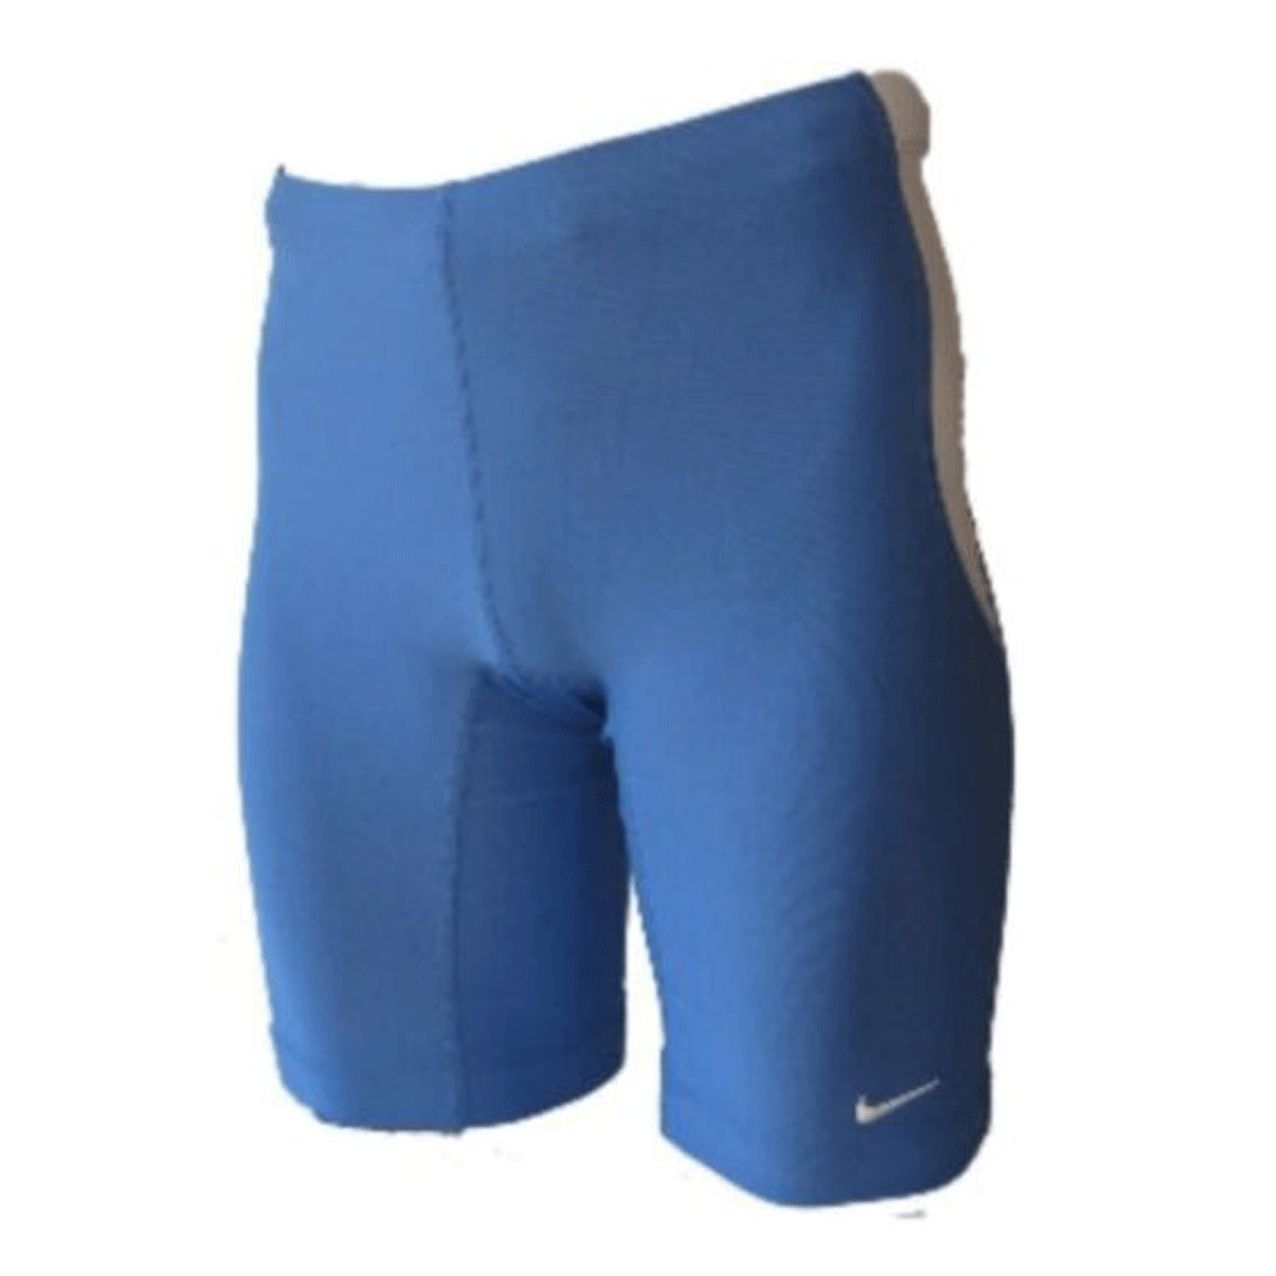 Nike Mens Compression Shorts Dri-Fit Running Short  212878-435 freeshipping - Benson66